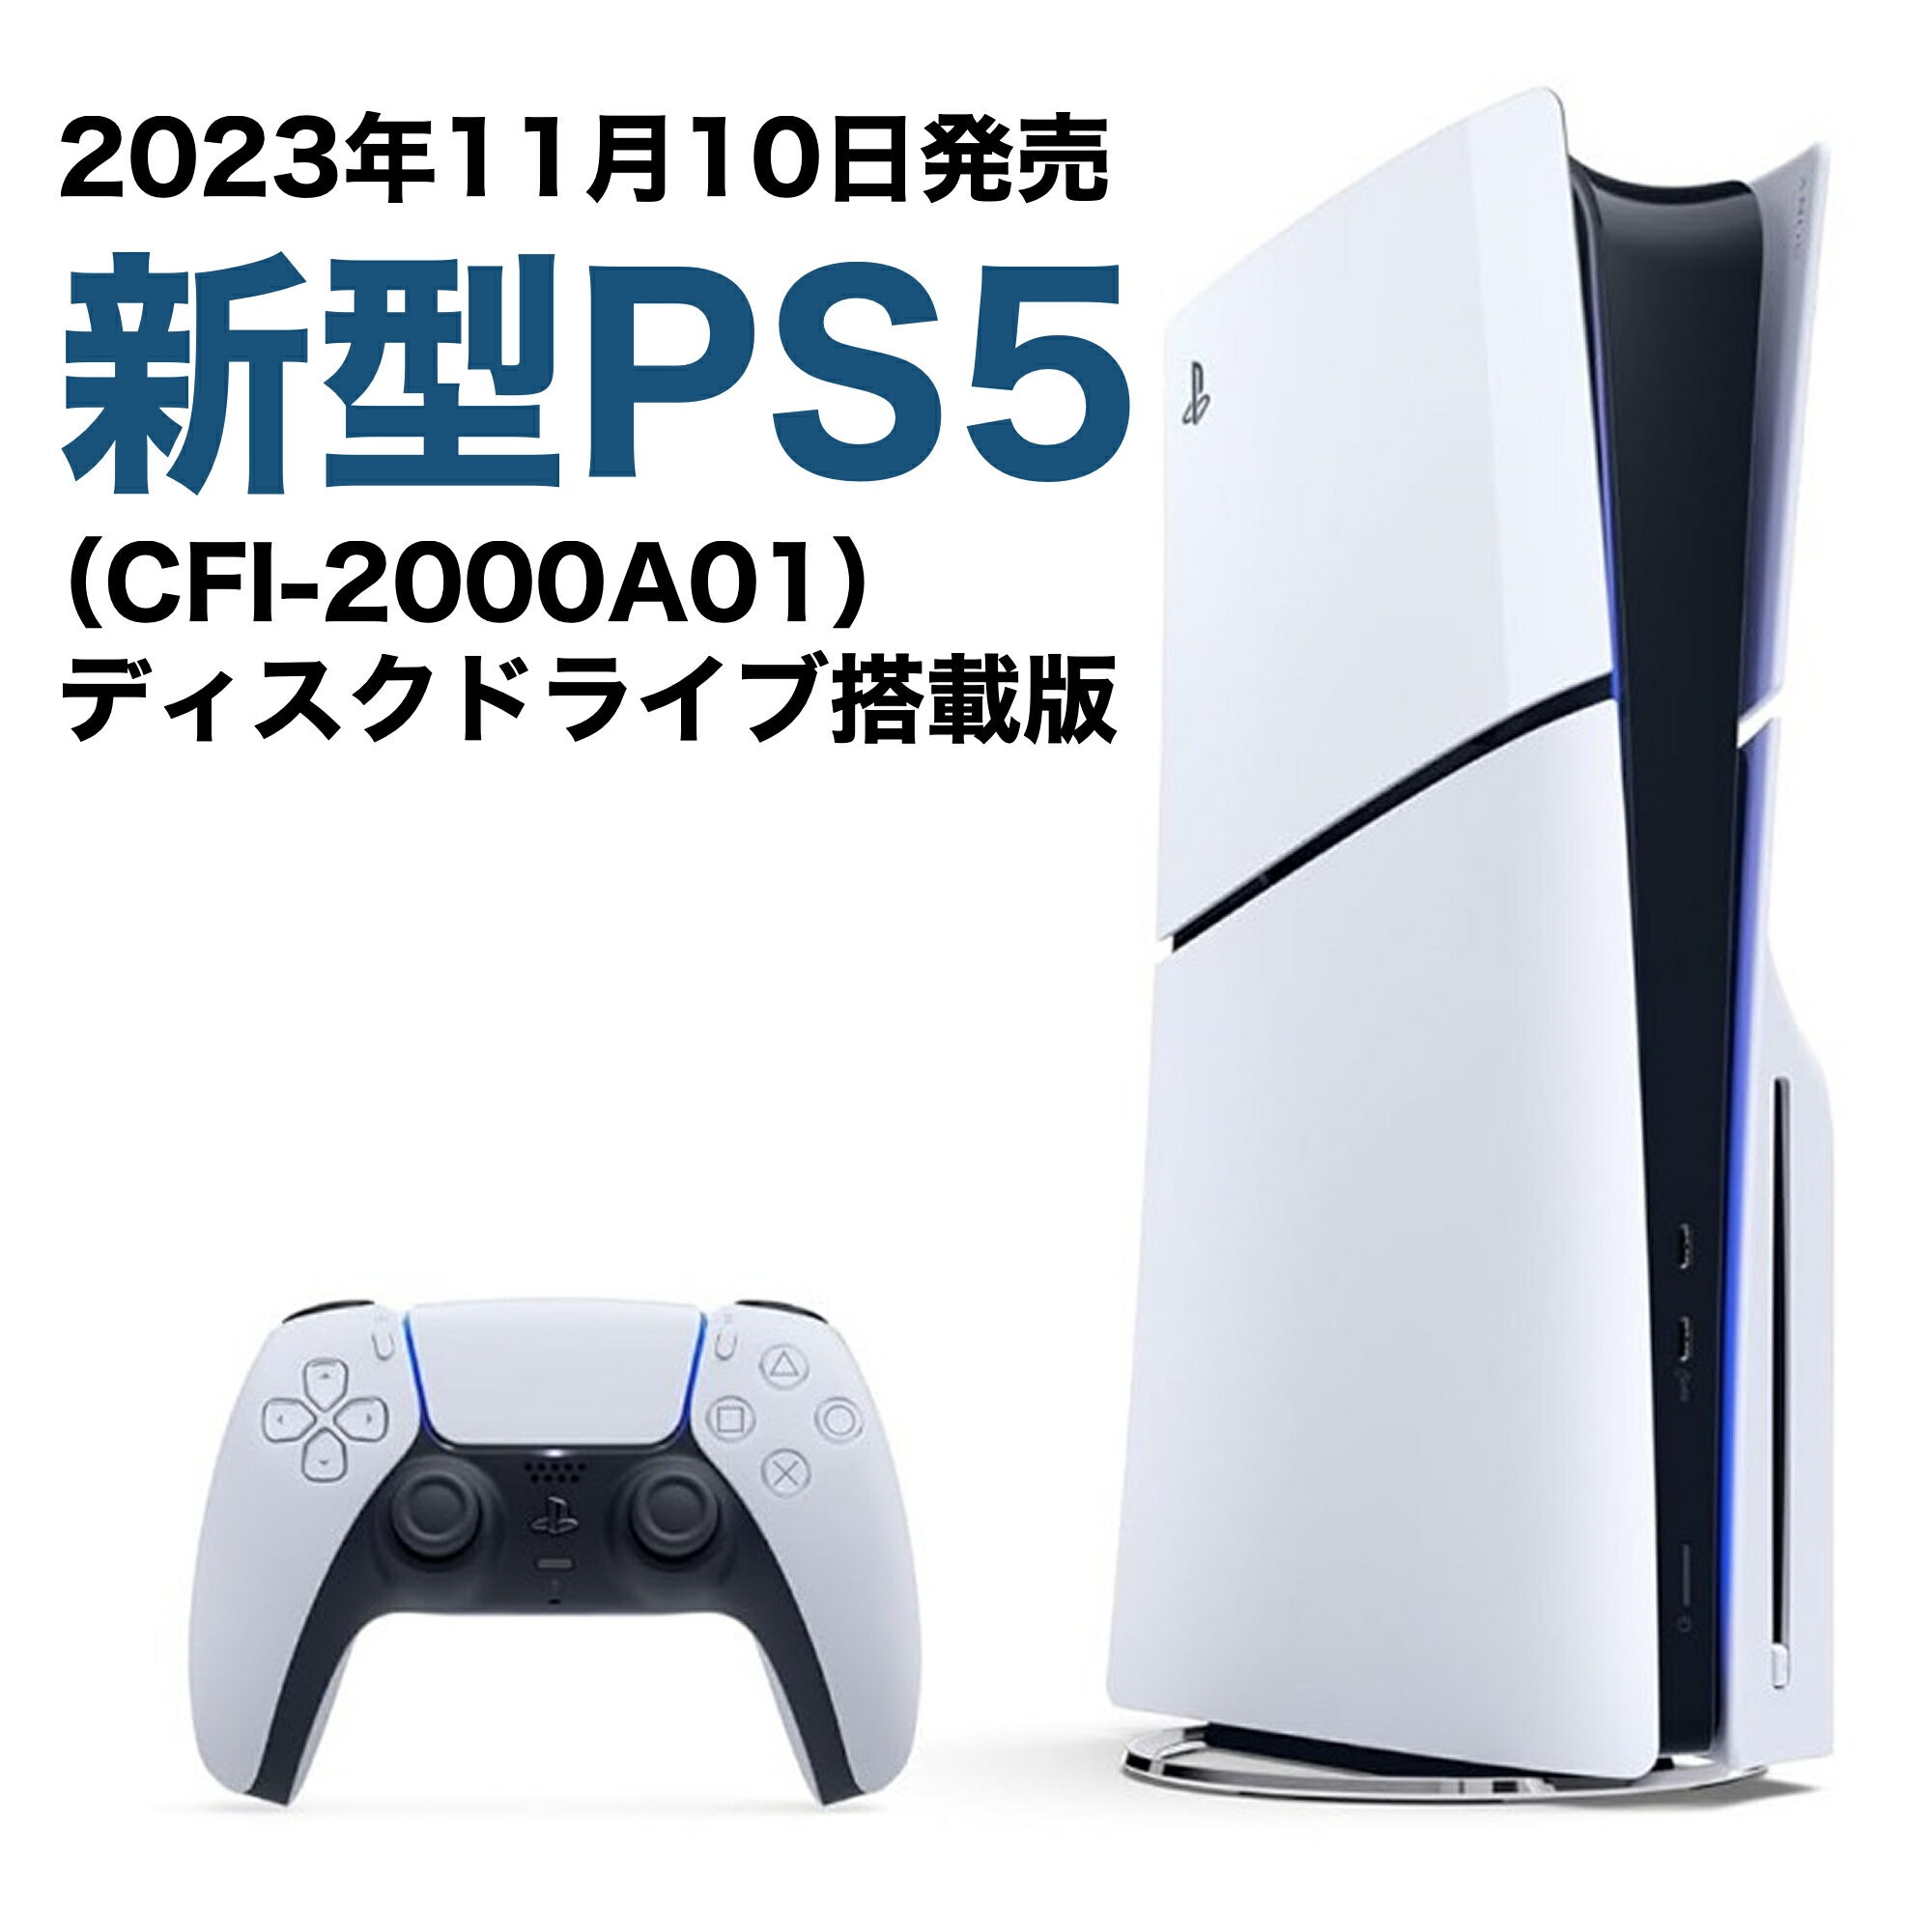 【14時までのご注文で当日発送】2023年 新型モデル PS5 本体 PlayStation5 CFI-2000A01 プレイステーション プレステ5 ディスク搭載版 通常版 新品